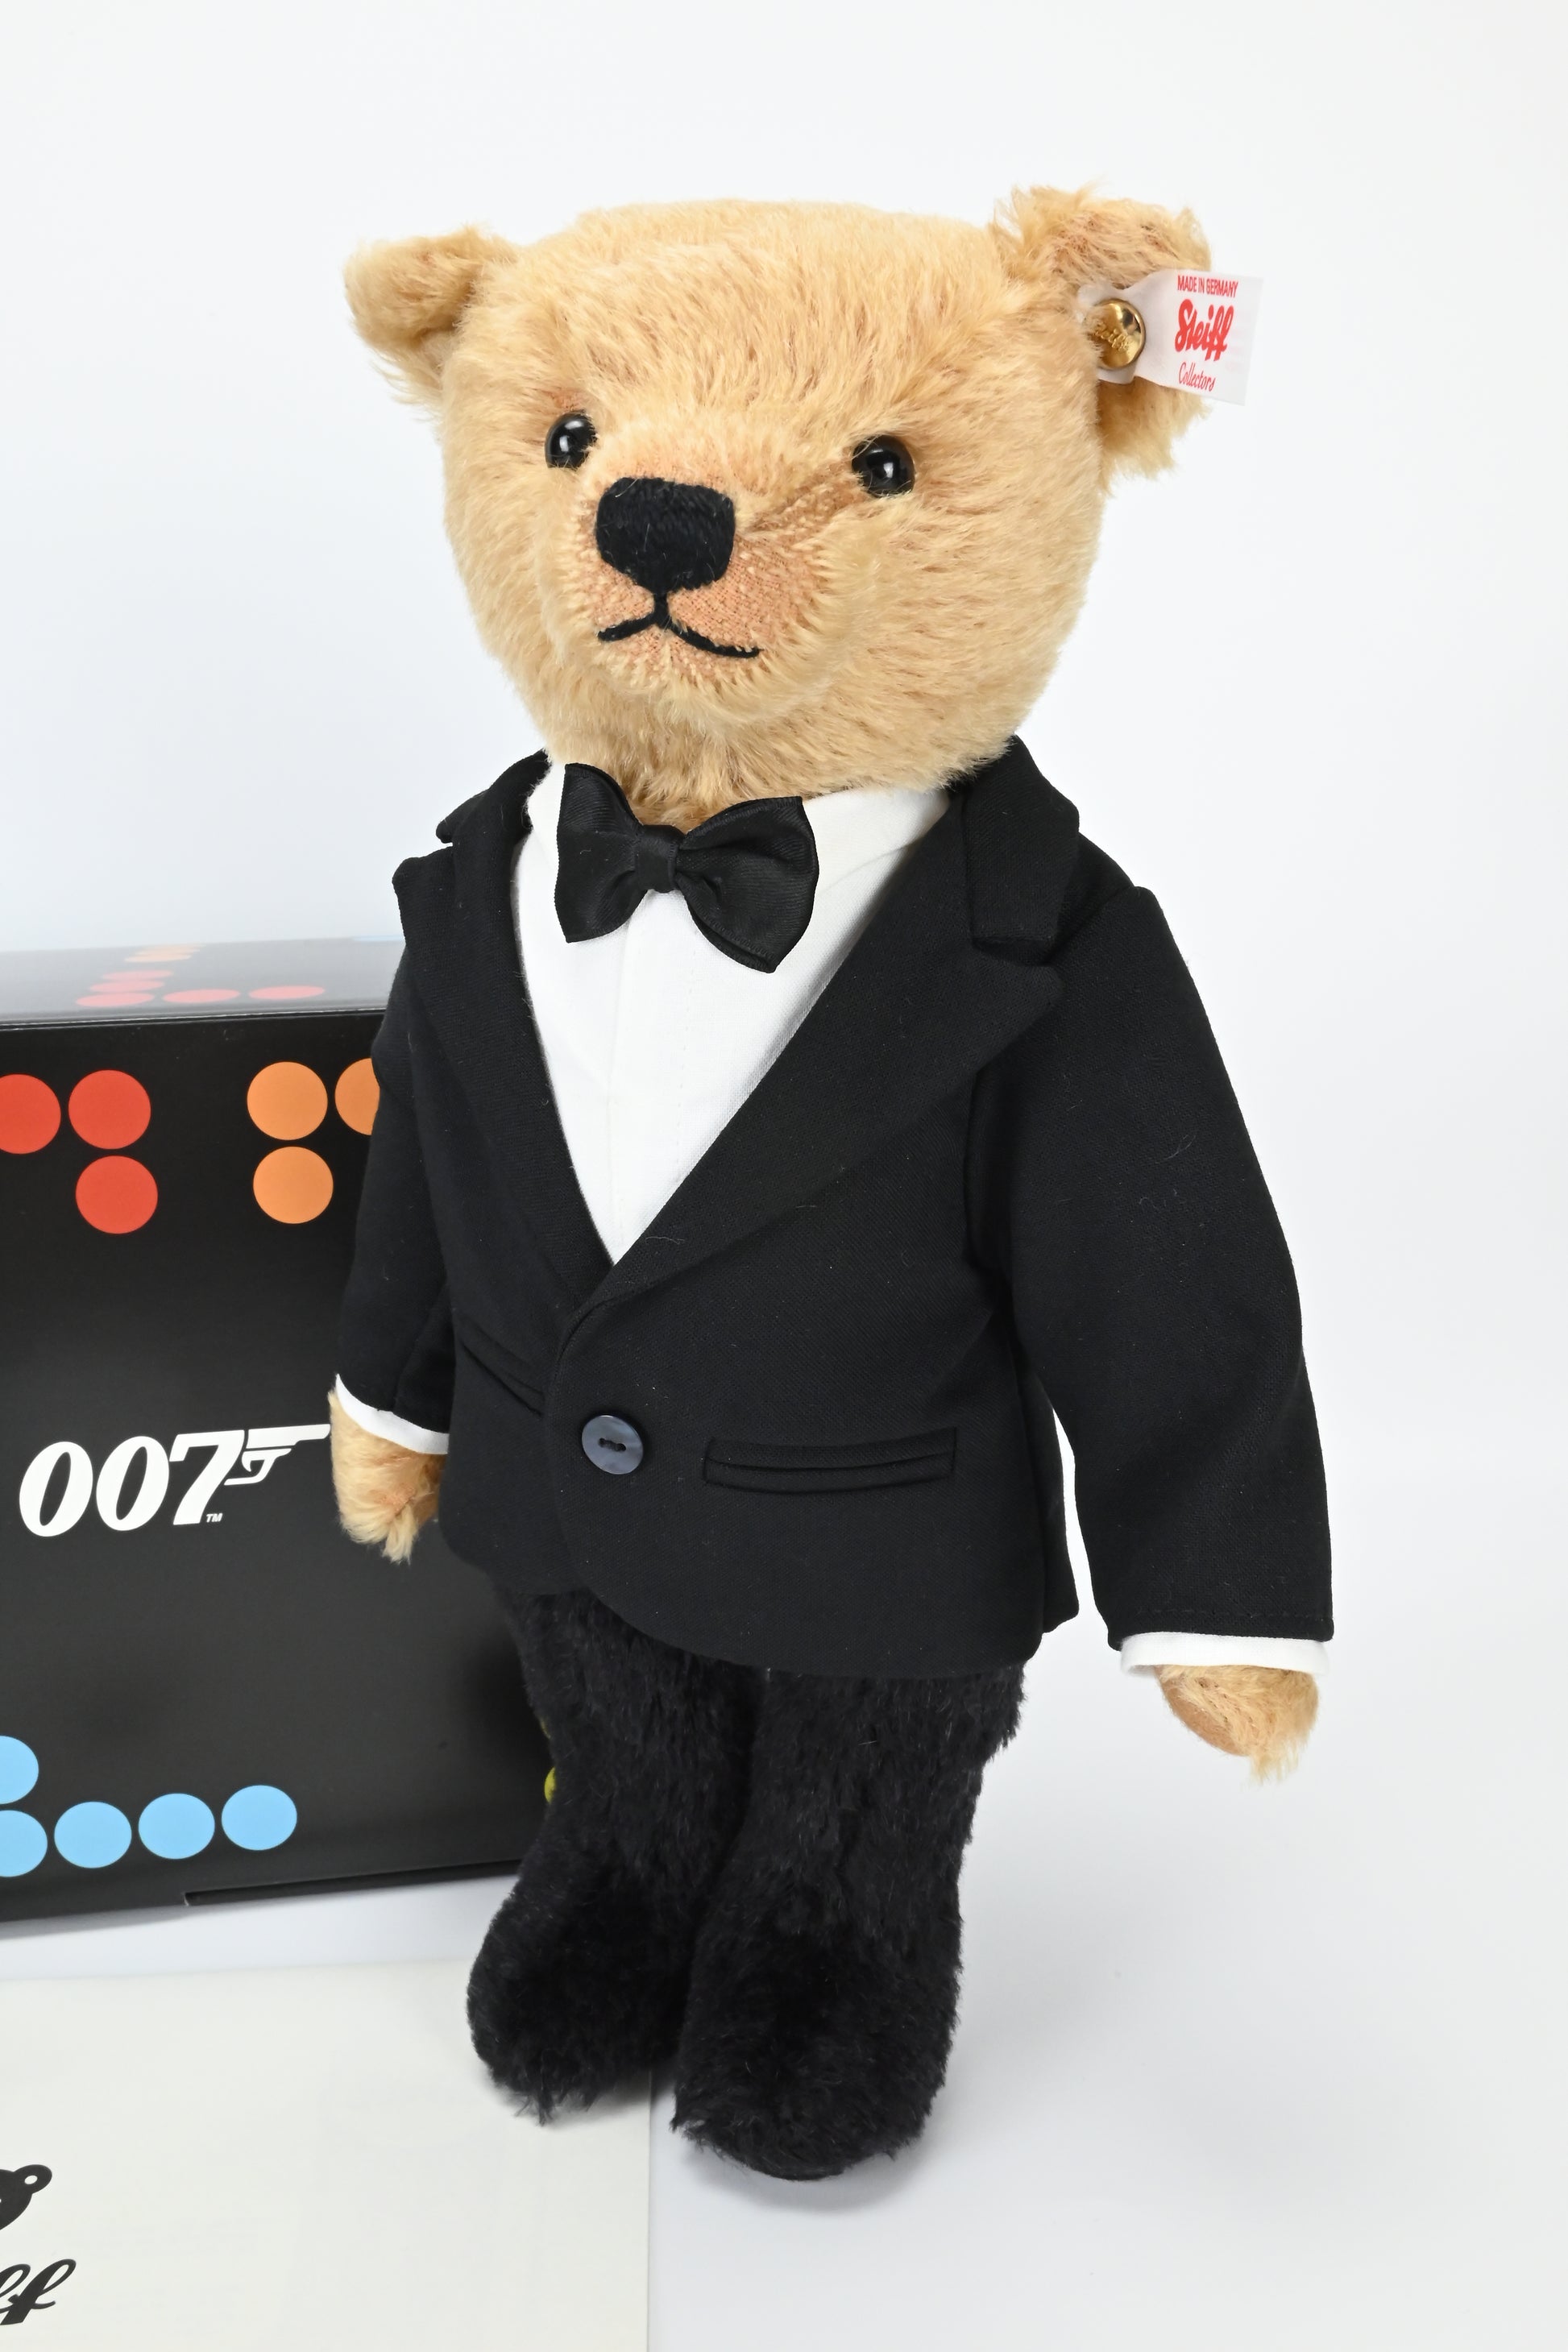 James Bond Teddy Bear - By Steiff